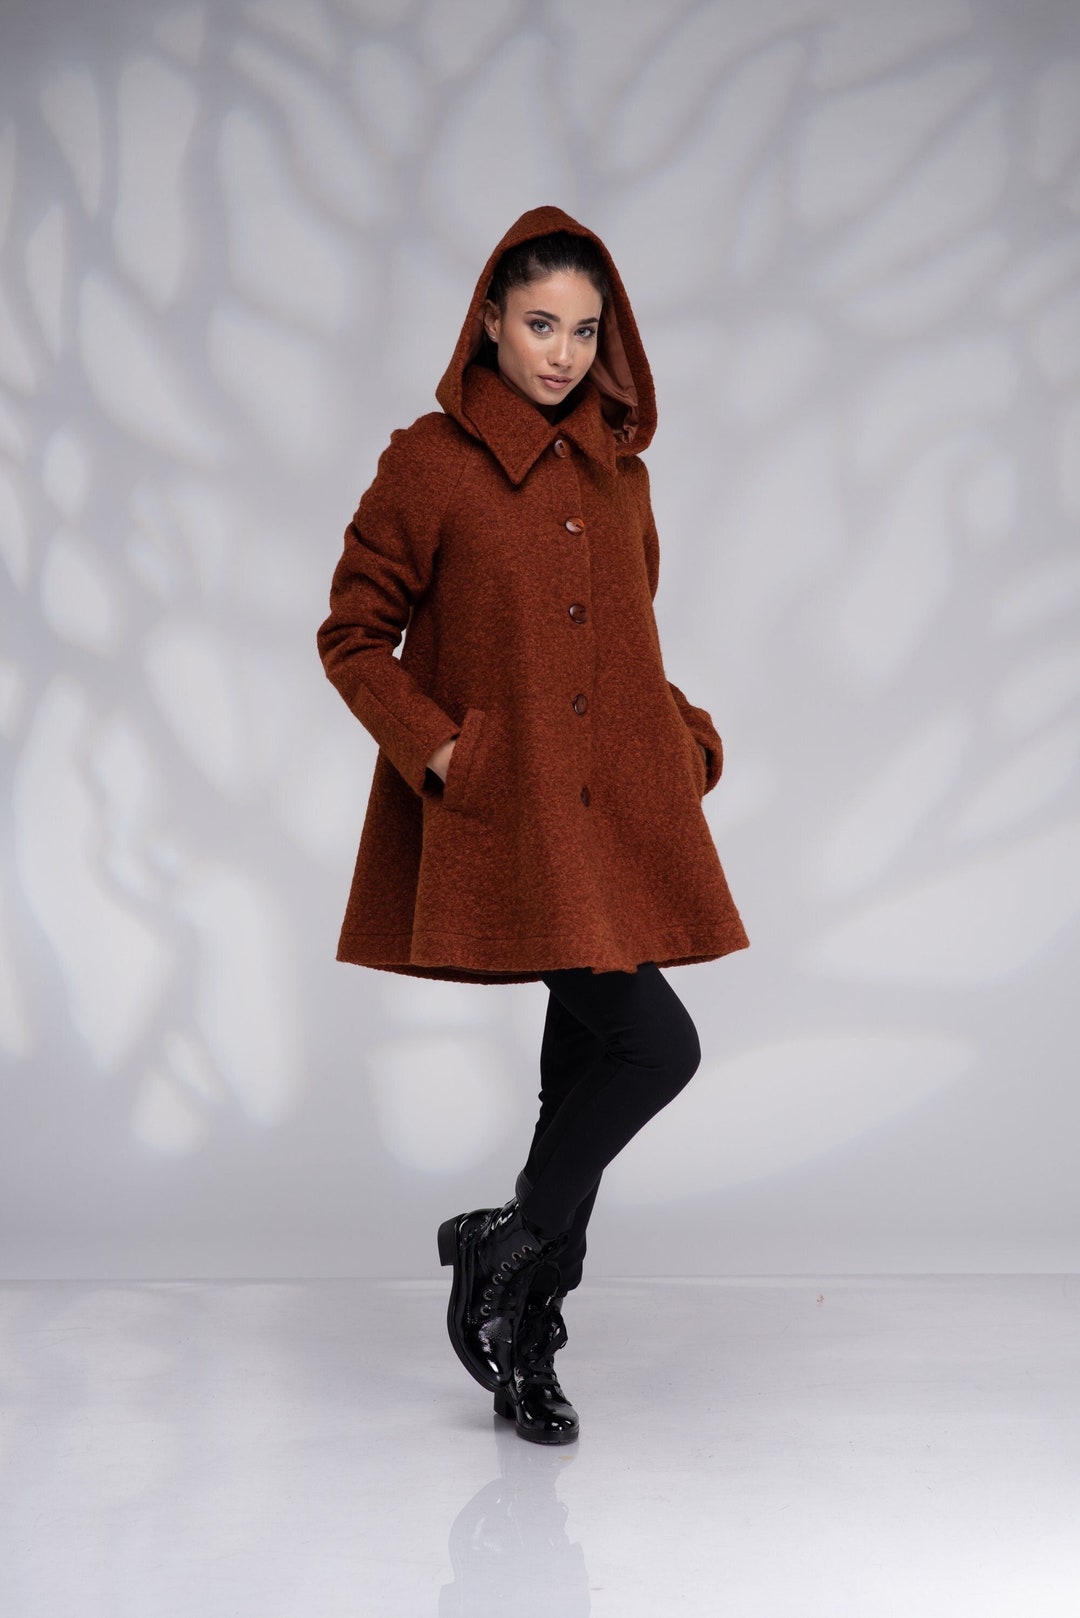 Wool Swing Coat Hooded Coat Women Winter Coat Warm Coat - Etsy